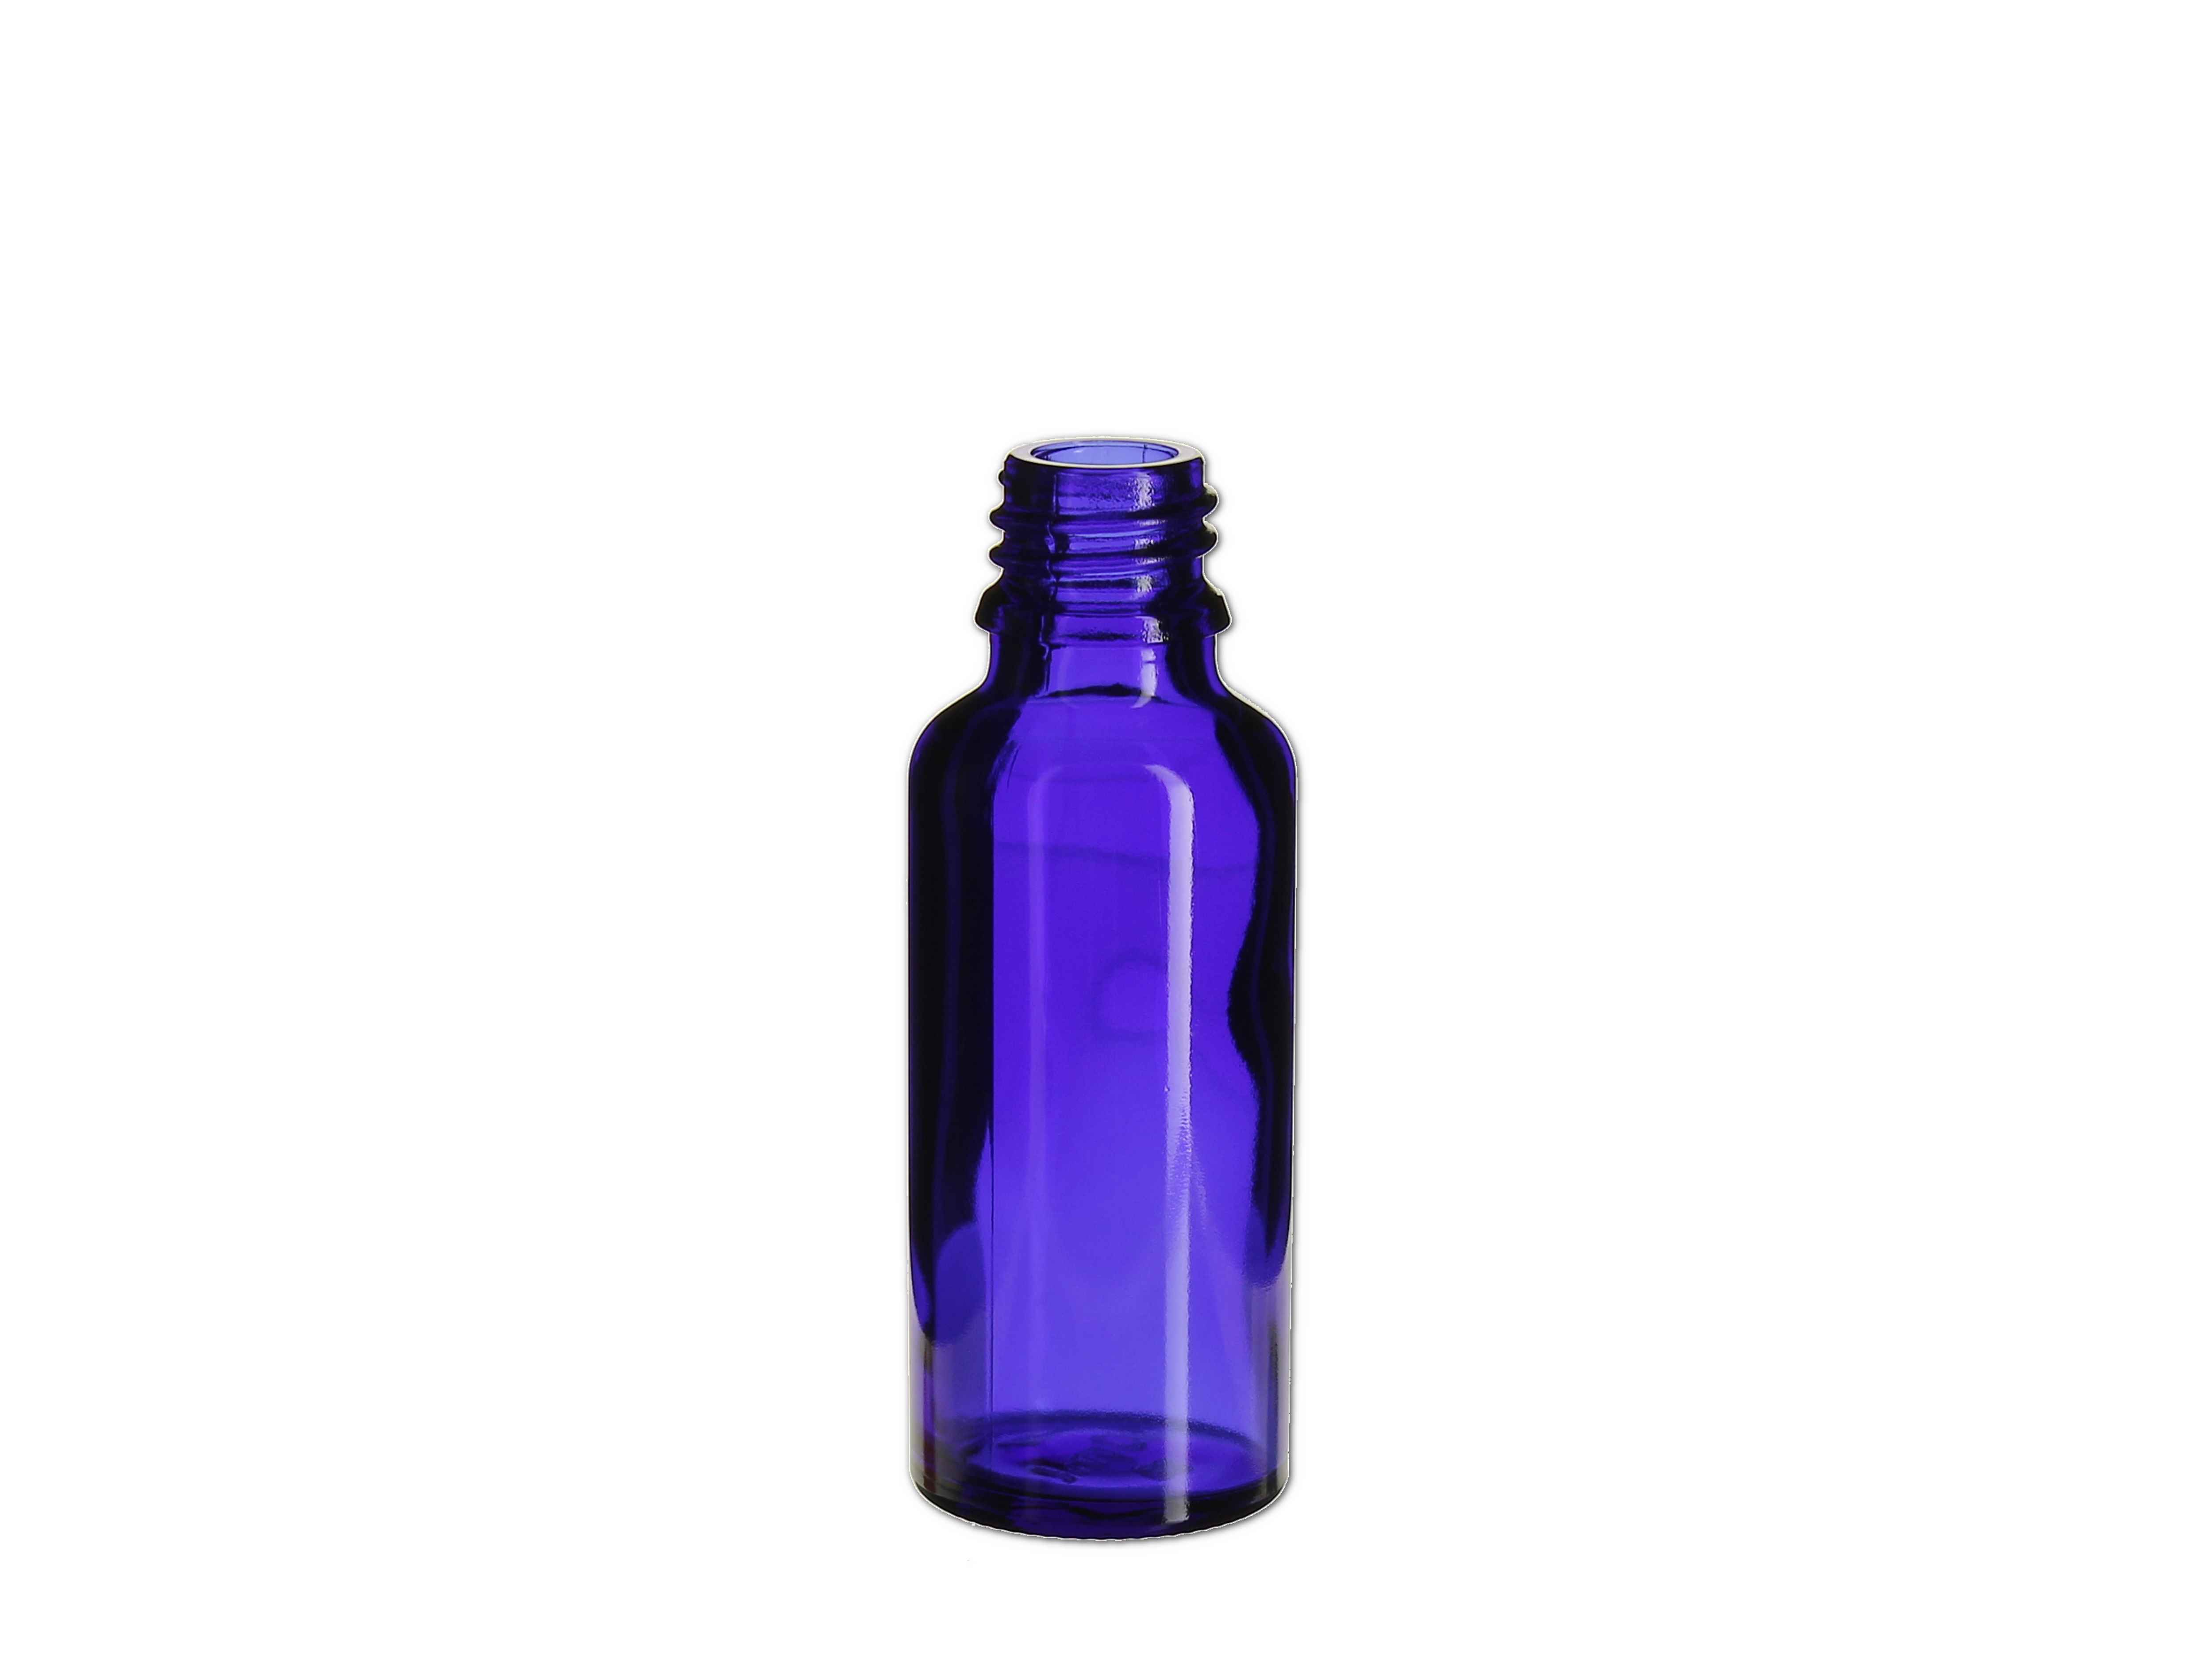    Flasche blau - GL18 - 30ml